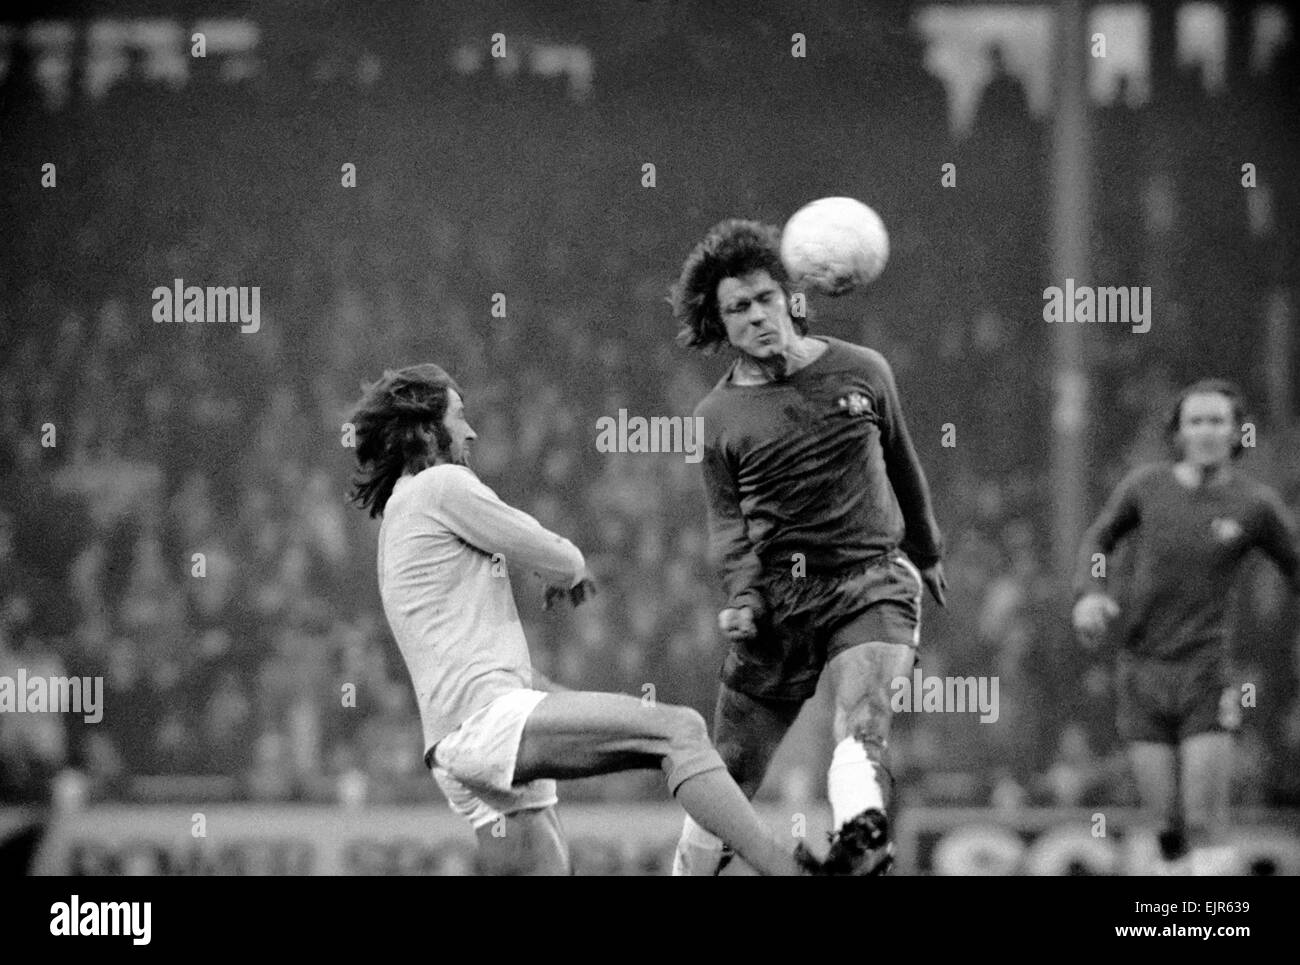 Chelsea v. L Huddersfield. Davy Webb batte centro in avanti per Huddersfield Frank Worthington a Stamford Bridge. Il punteggio finale è stato un due tutti traggono Gennaio 1972 72-0231-001 Foto Stock